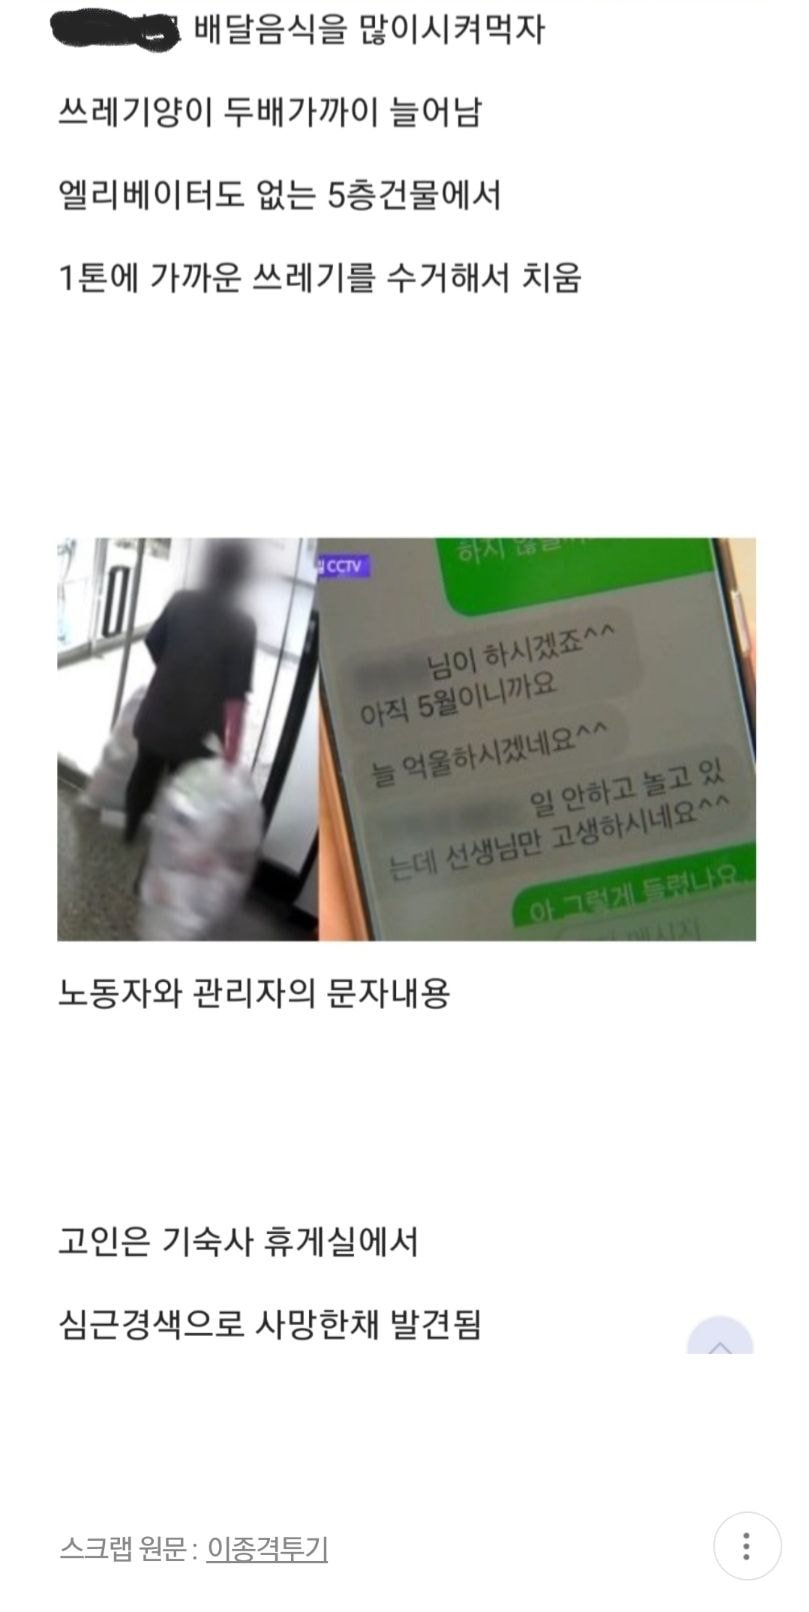 서울대 청소노동자 사망 당일 CCTV